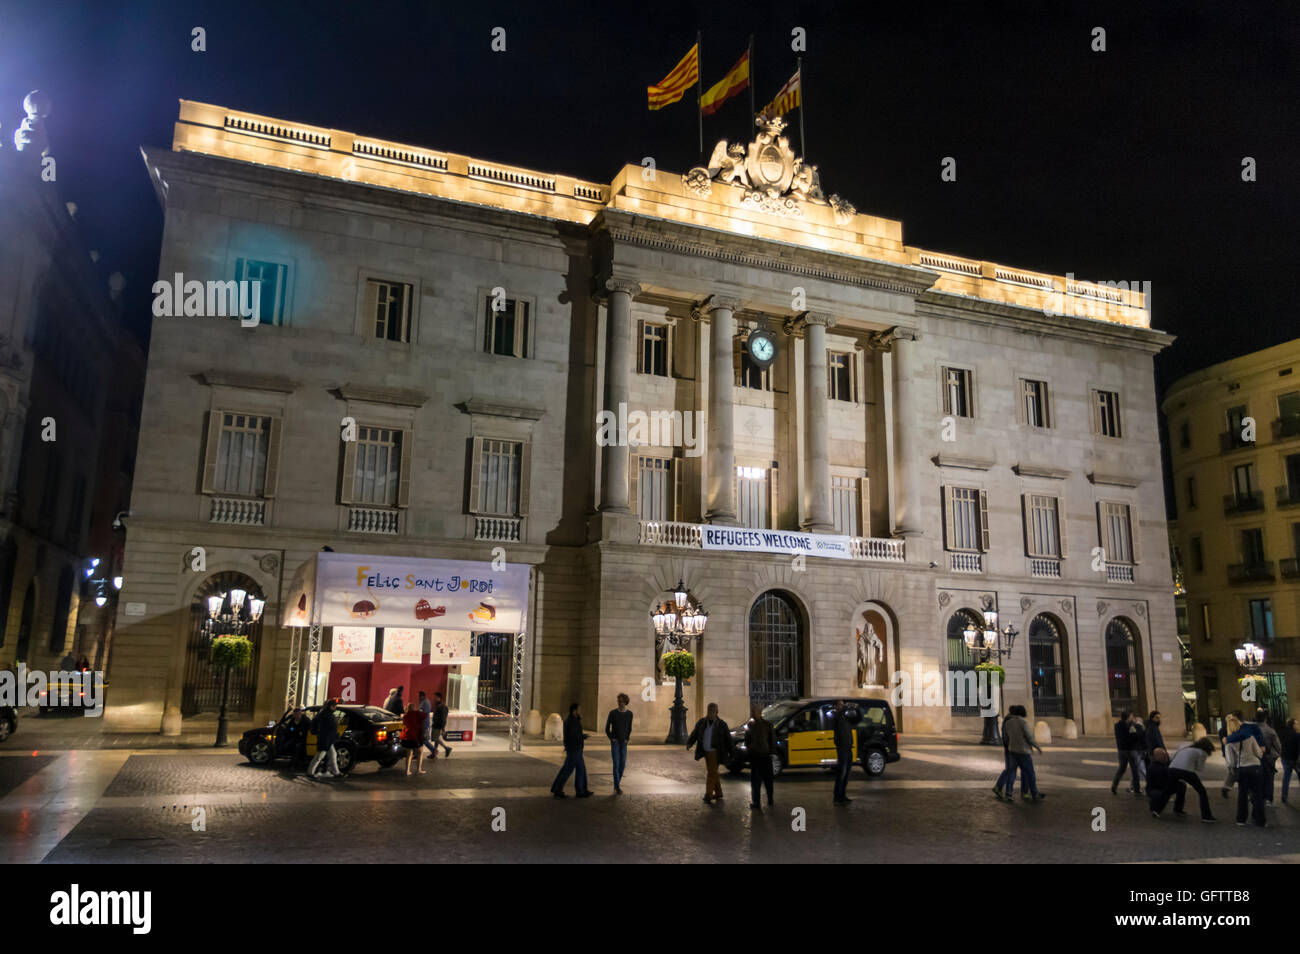 La facciata anteriore della Casa de la Ciutat, il municipio di Barcellona, di notte, con un "rifugiati benvenuto" banner. Foto Stock